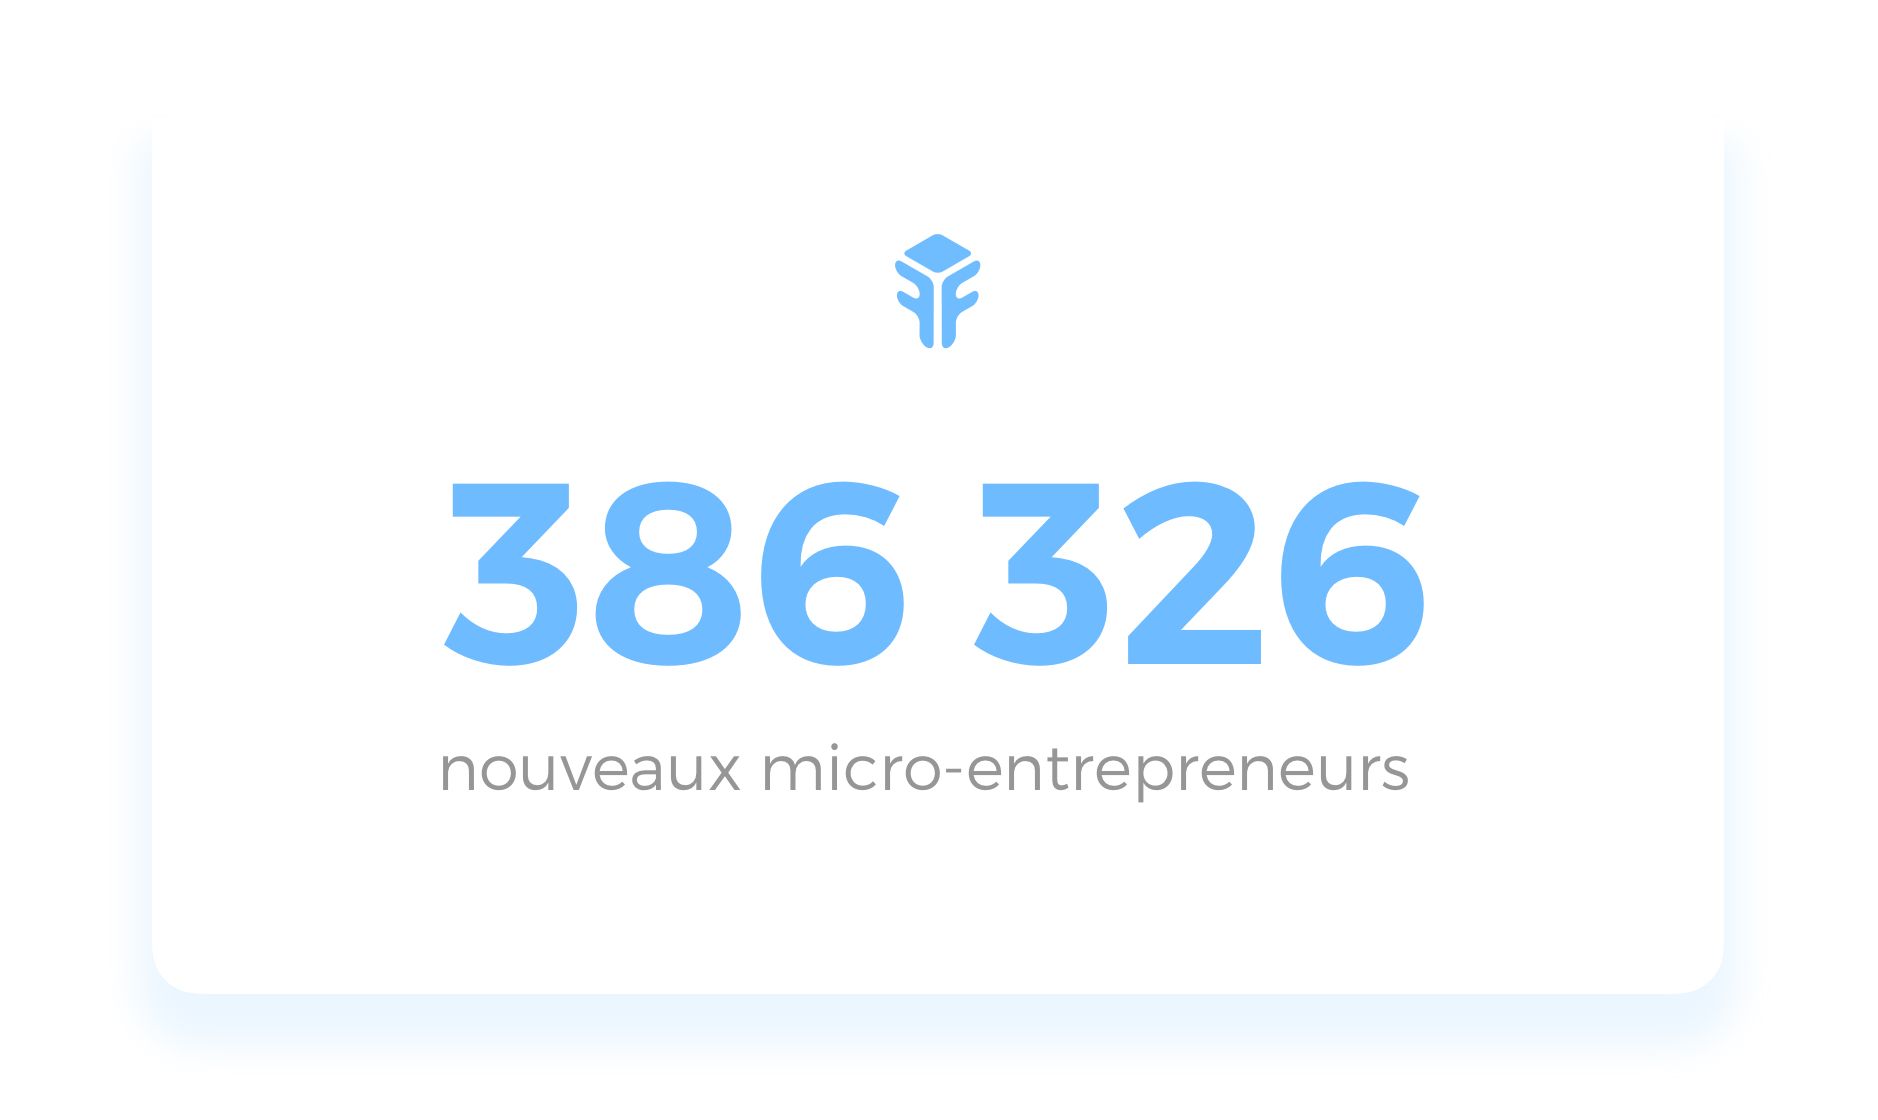 Freebe : Lâ€™auto-entrepreneuriat ne cesse de sÃ©duire : 386 326 lancements dâ€™activitÃ© en 2019